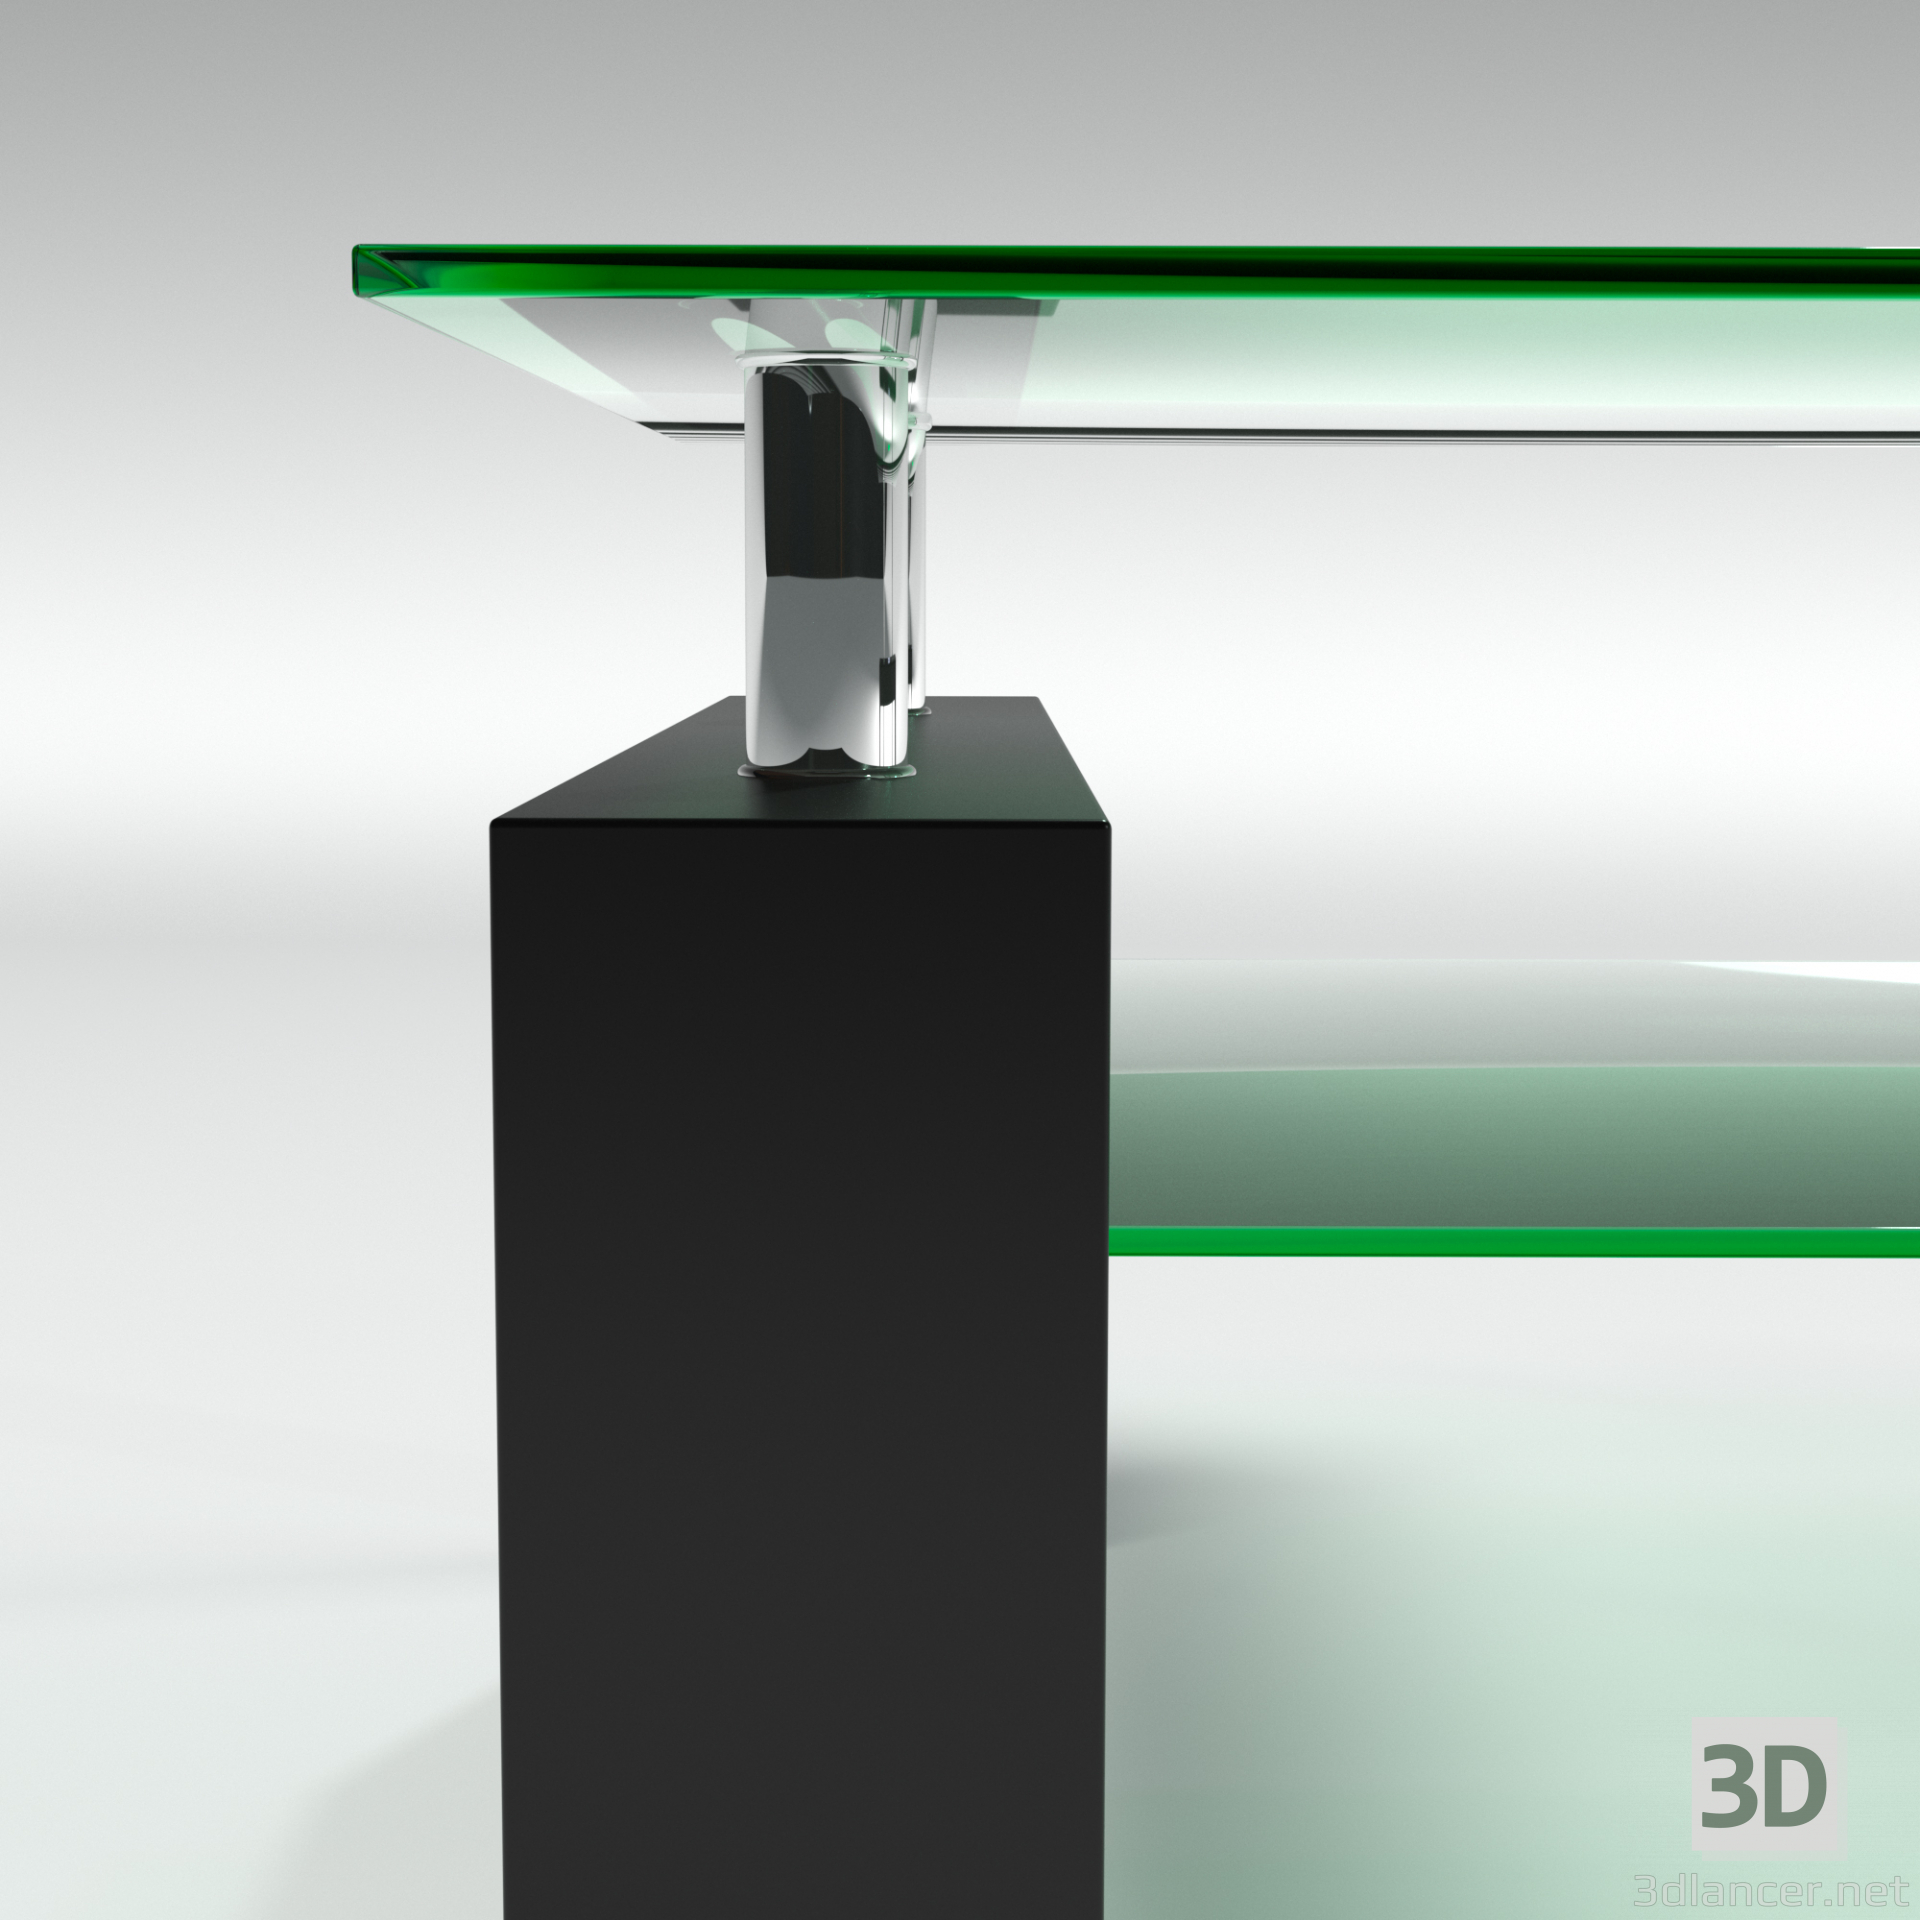 Glas tisch 3D-Modell kaufen - Rendern